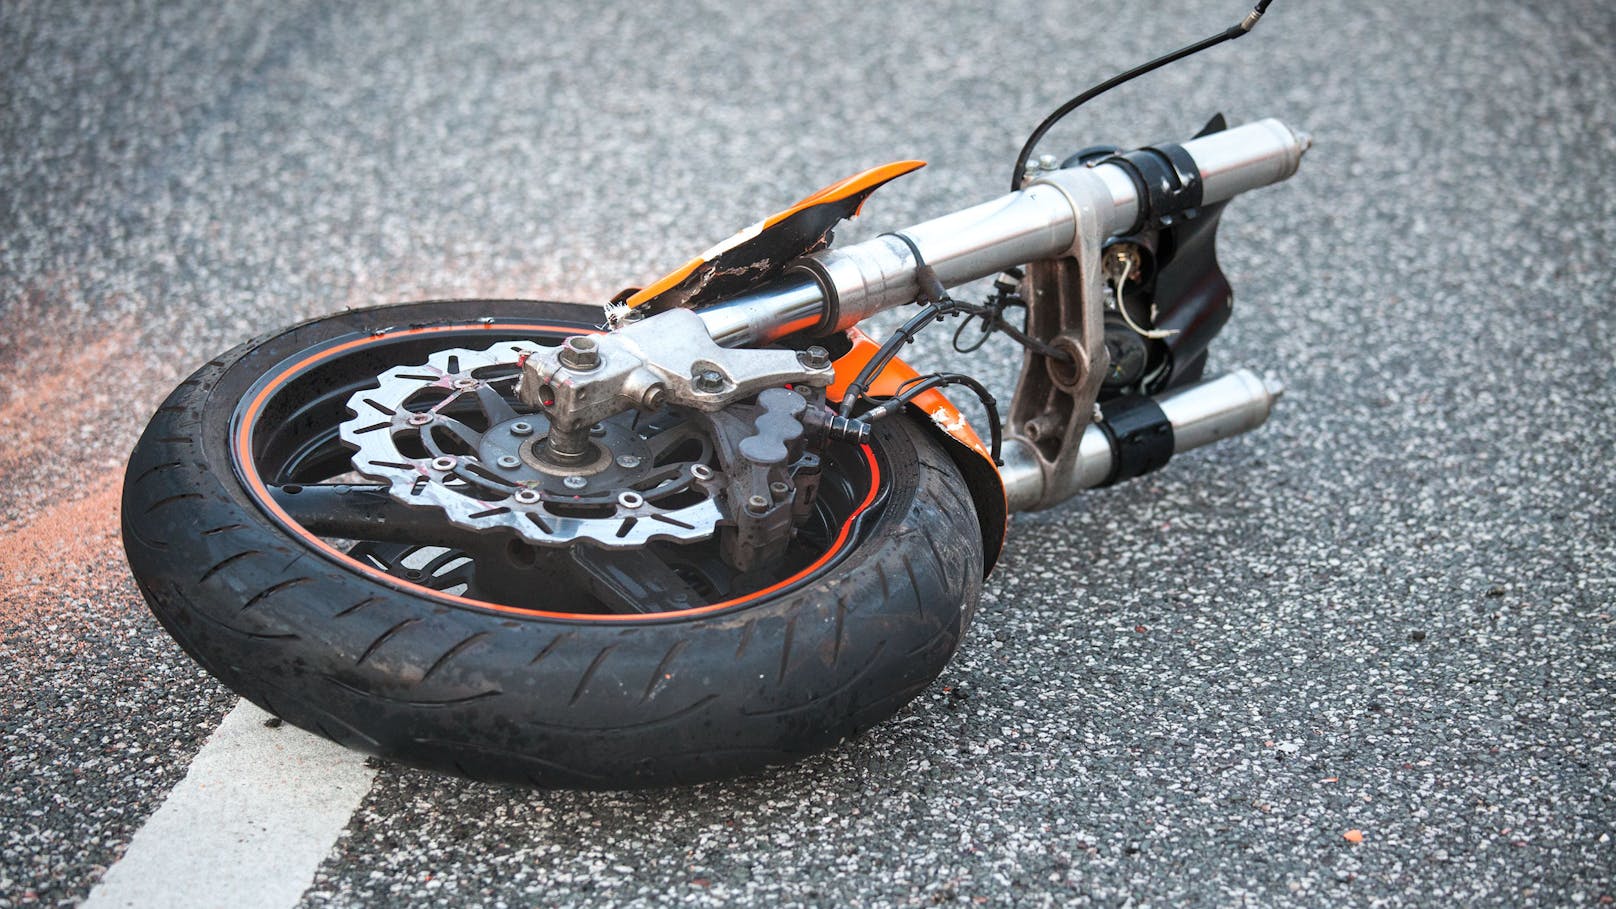 34-Jähriger stiehlt Motorrad und baut betrunken Unfall